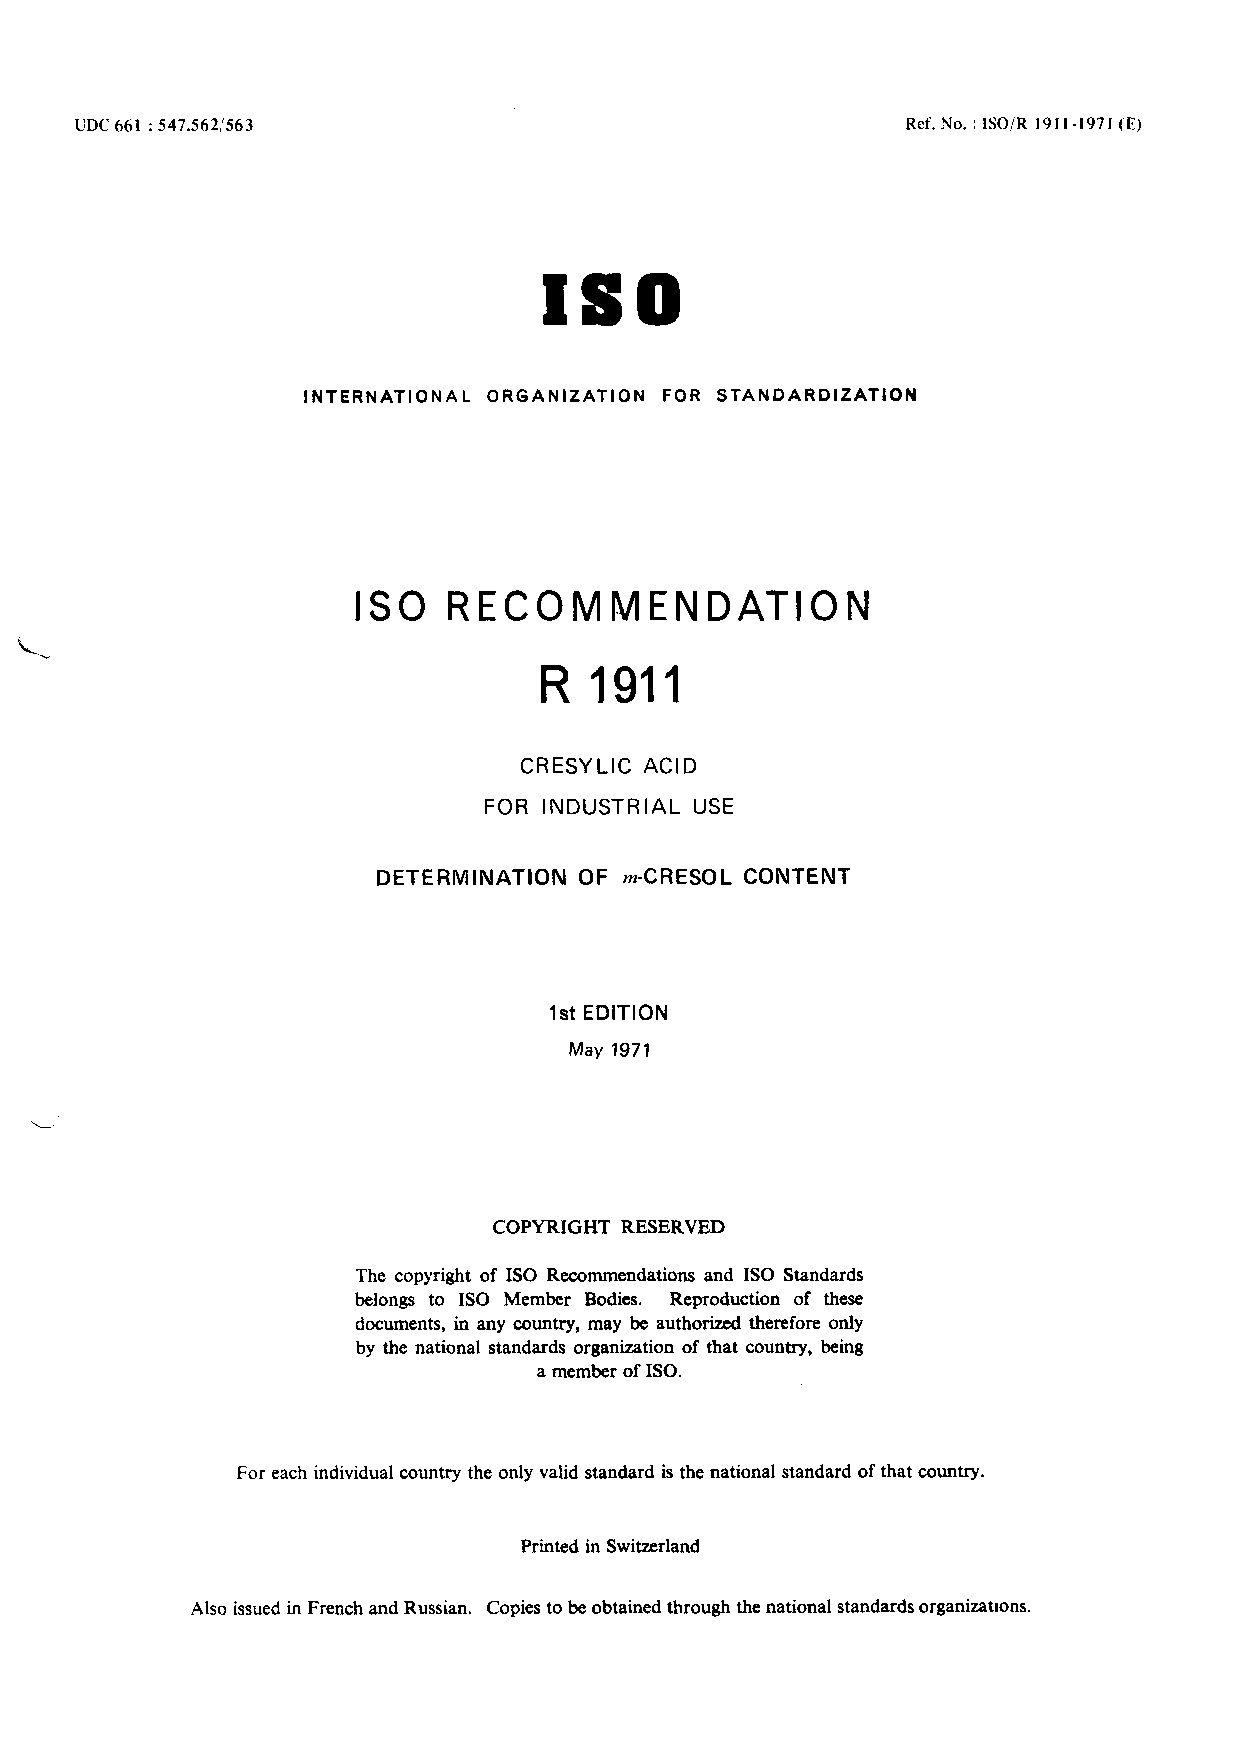 ISO/R 1911-1971